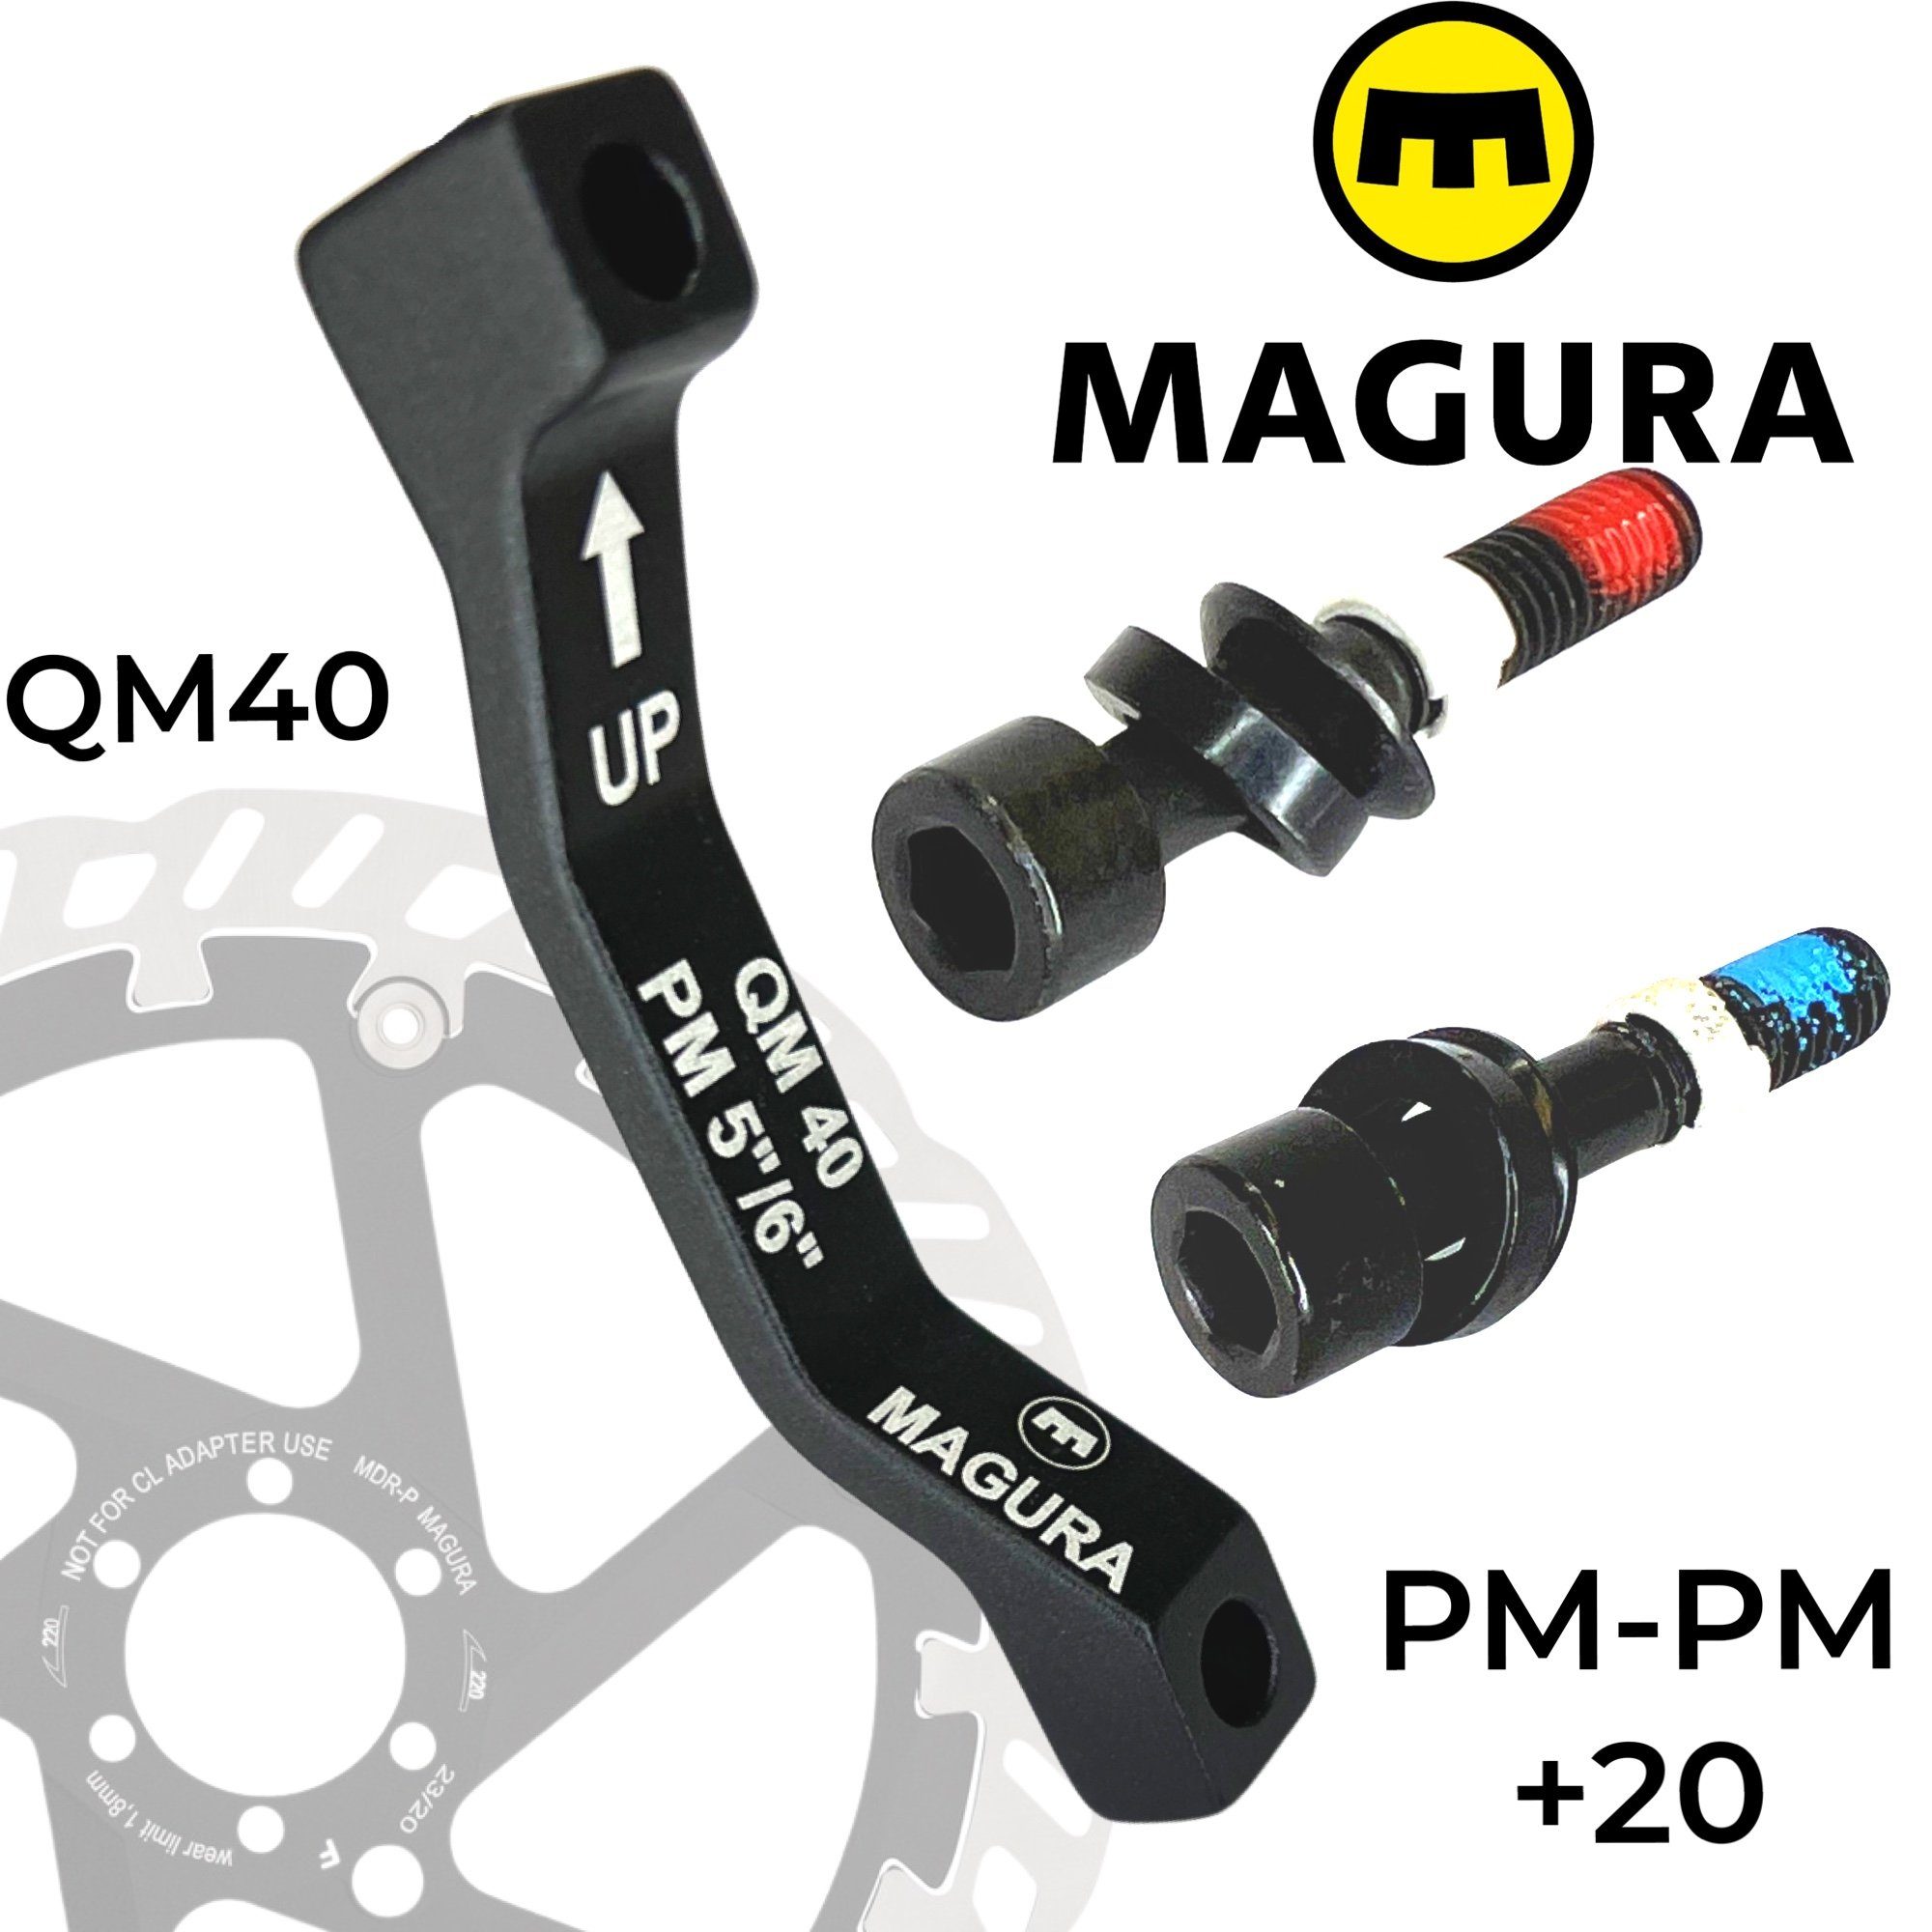 Magura Scheibenbremse Magura Bremsscheiben Adapter QM40, PM 160-180 / PM 140-160 +20mm